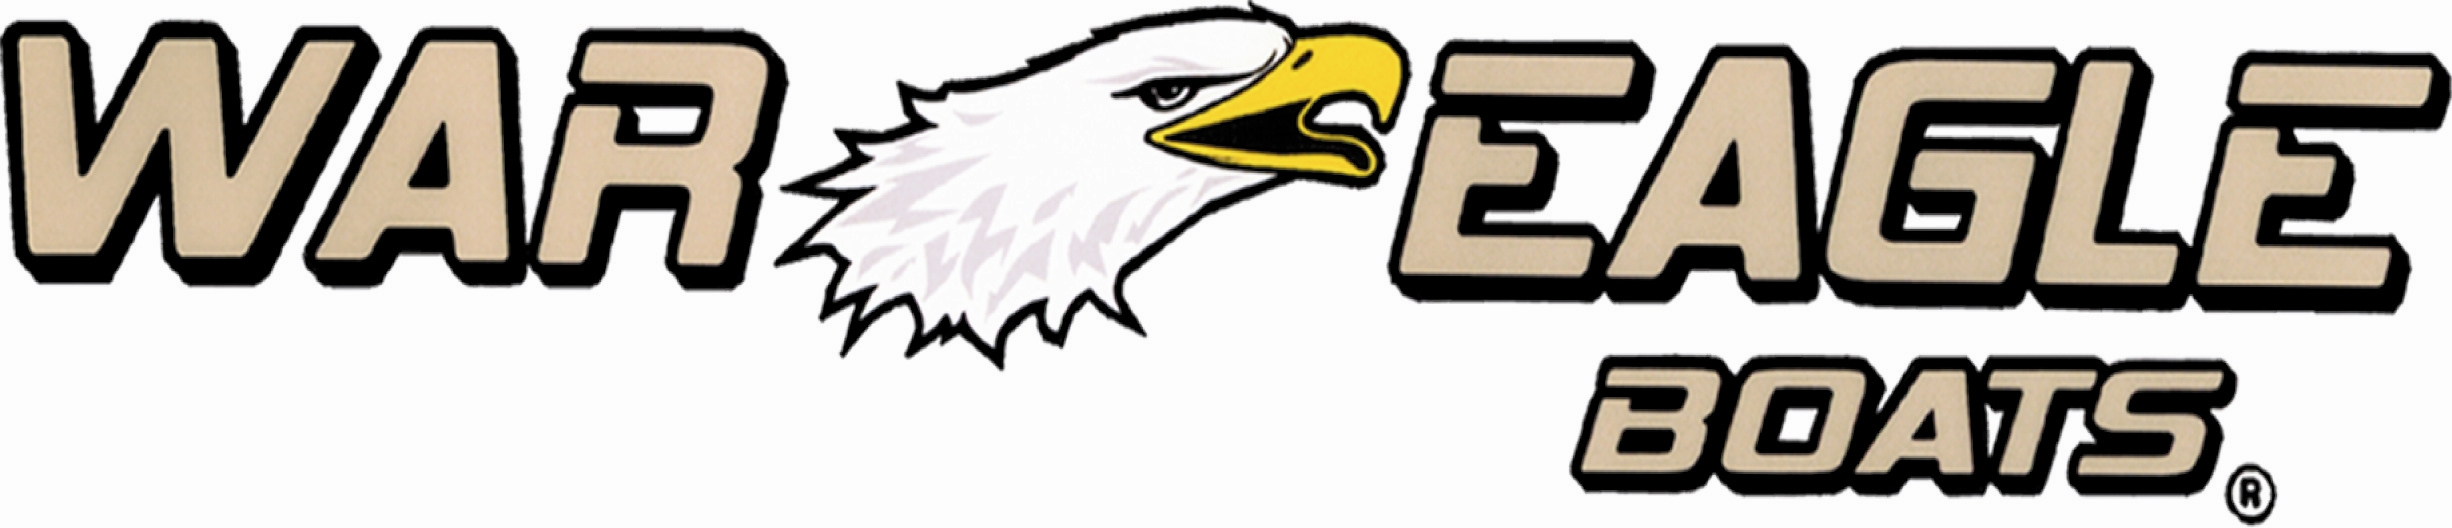 War Eagle logo